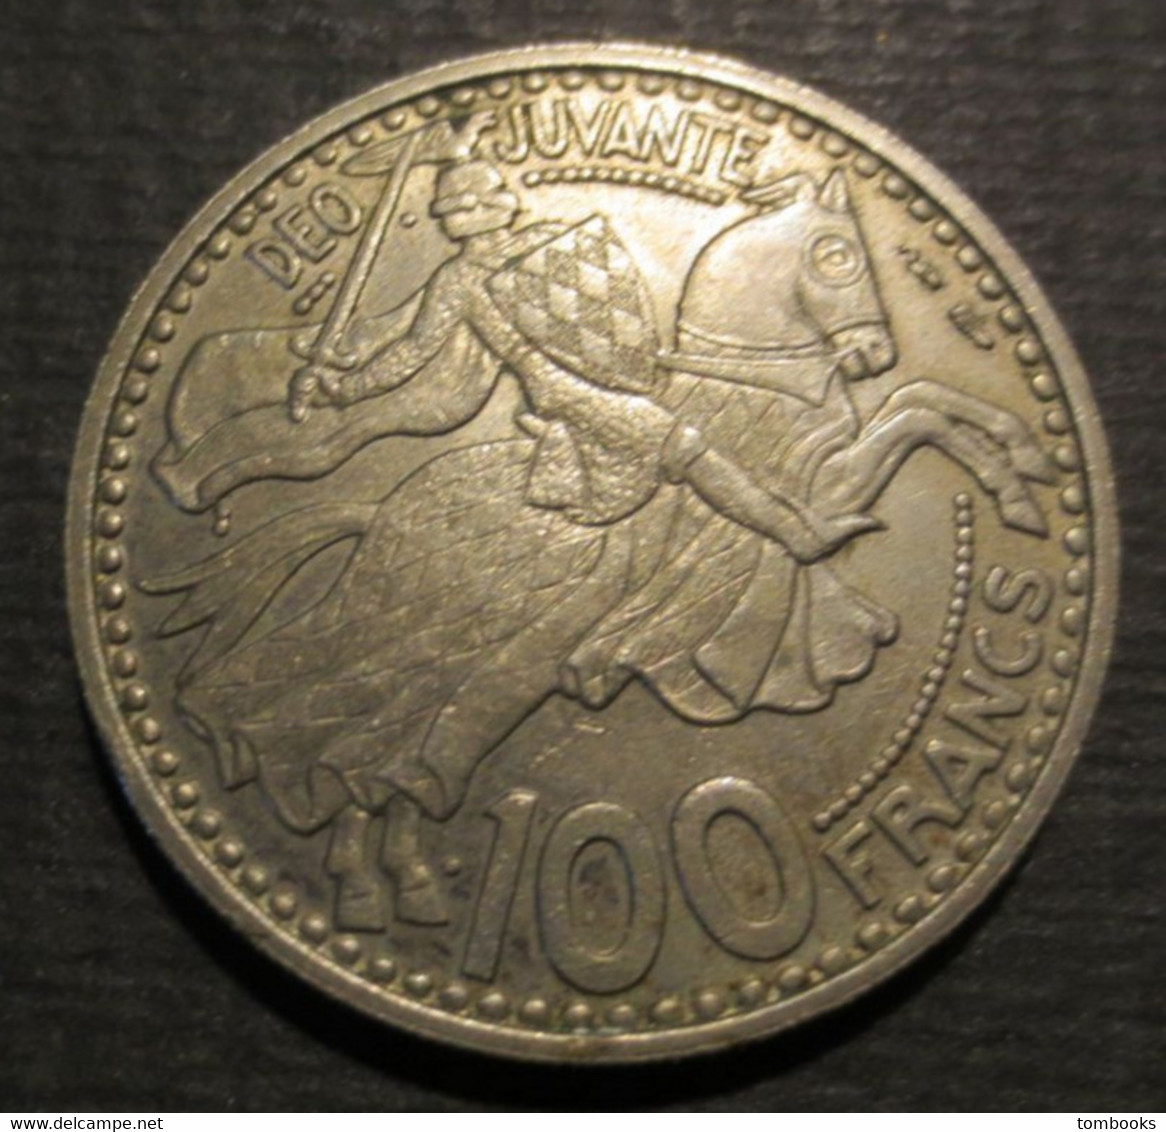 Monaco - Monnaie Ancienne - 100 Francs - Copper Nickel - Rainier III - Prince De Monaco - 1950 - - 1949-1956 Oude Frank